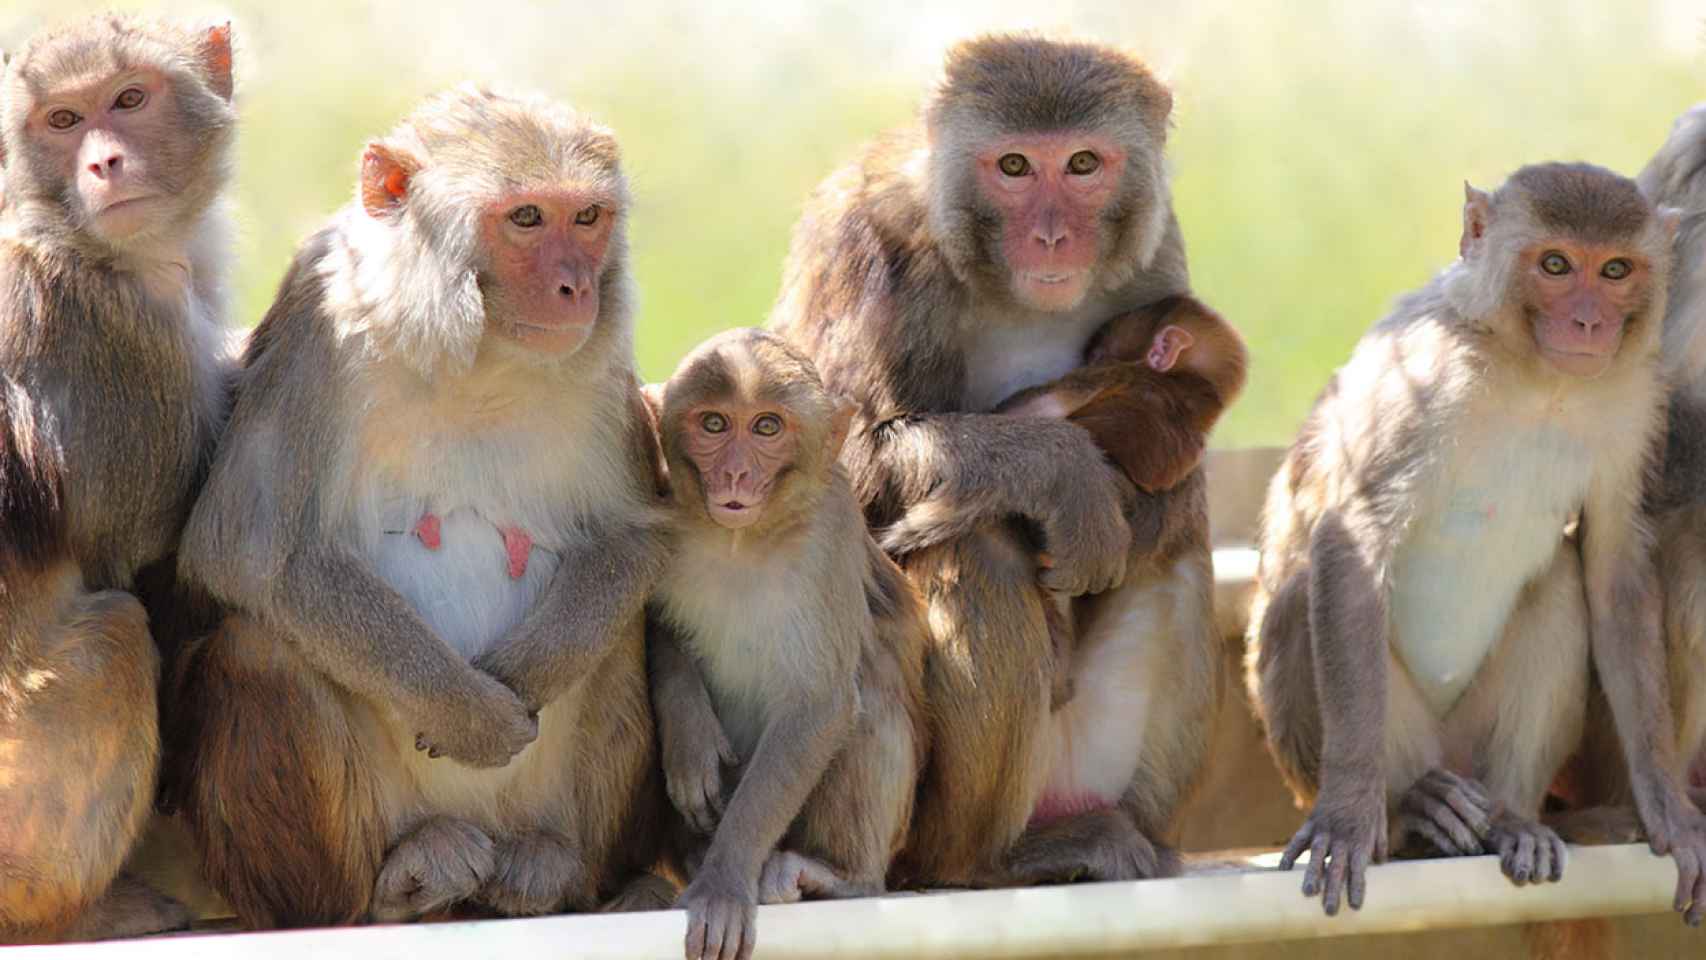 Grupo de macacos rhesus en el centro californiano.